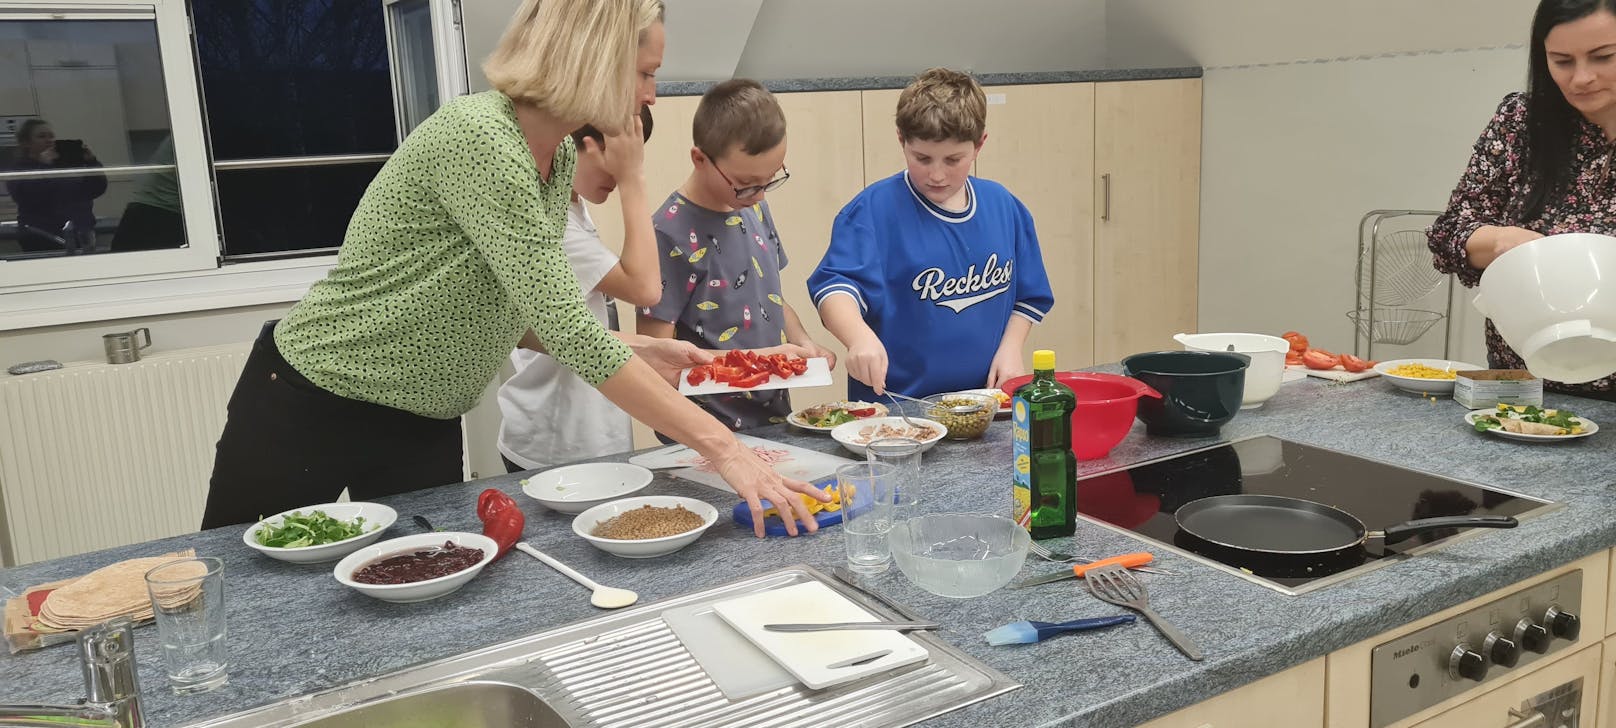 Ernährungsexpertin Gudrun Bertignoll zeigte den Kindern wie sie leckeres und gesundes Essen kochen können.